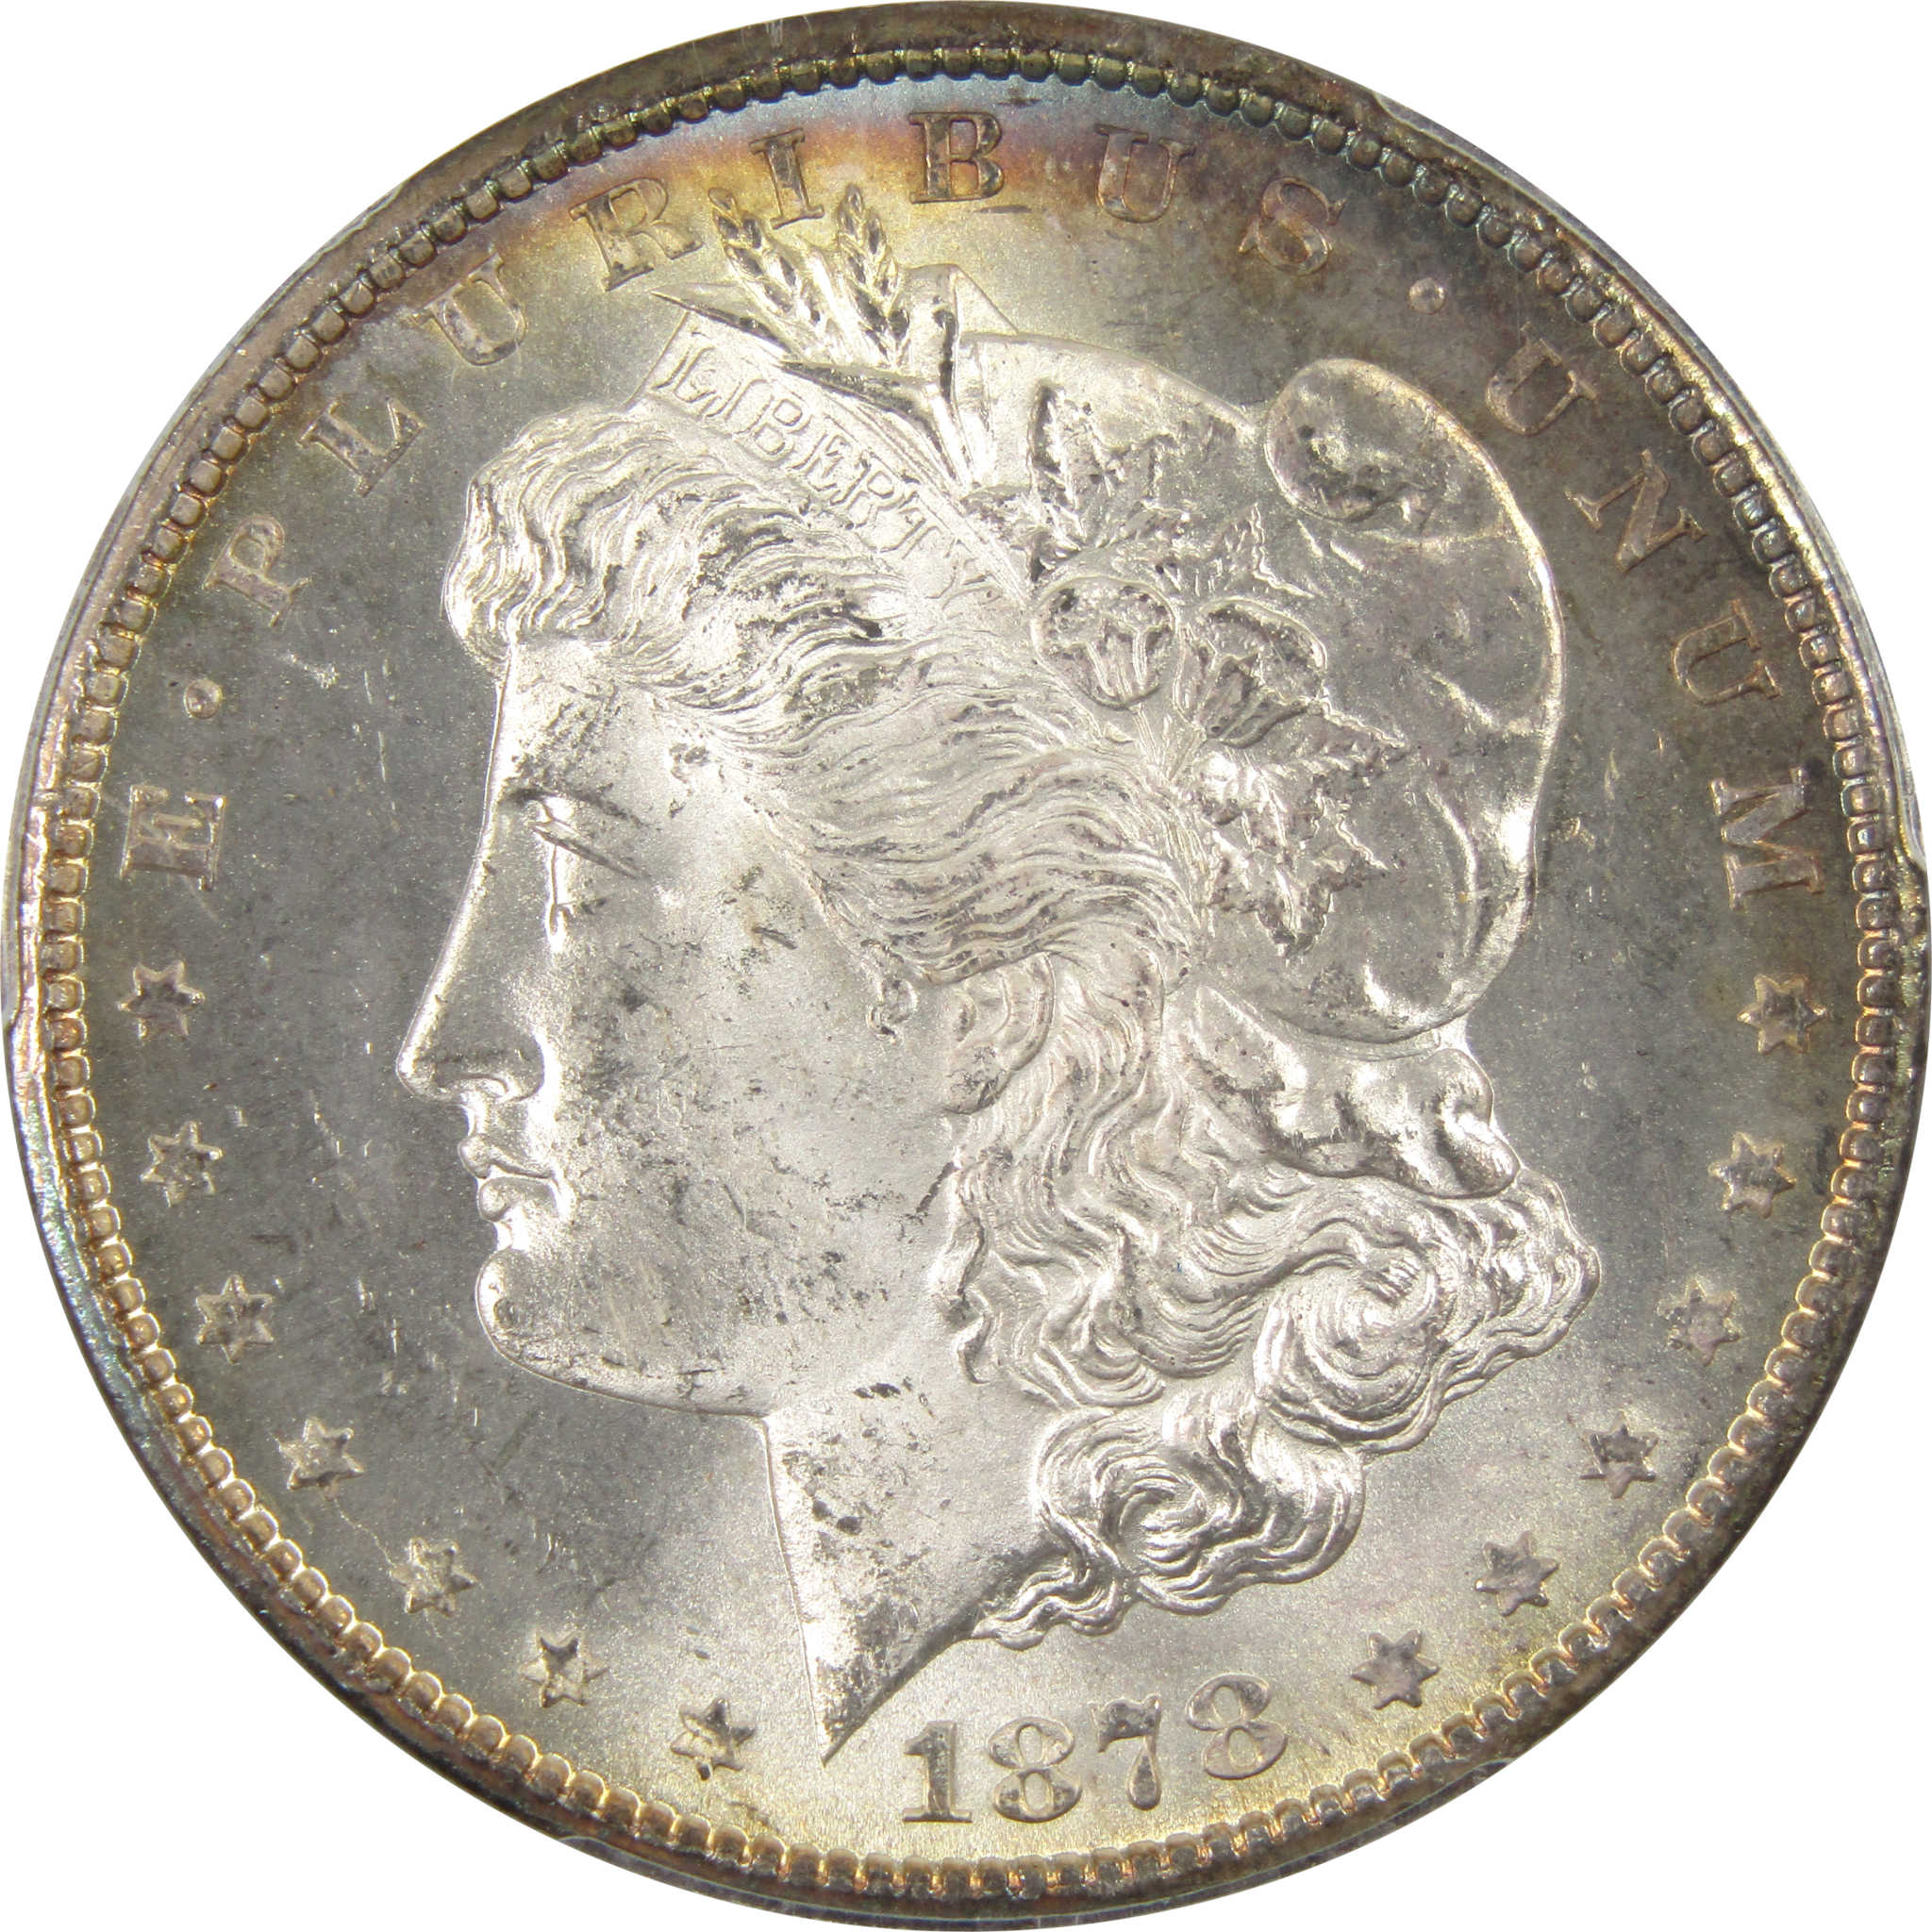 1878 CC Morgan MS 64 PCGS 90% Silver $1 Unc Reverse Toned SKU:I9125